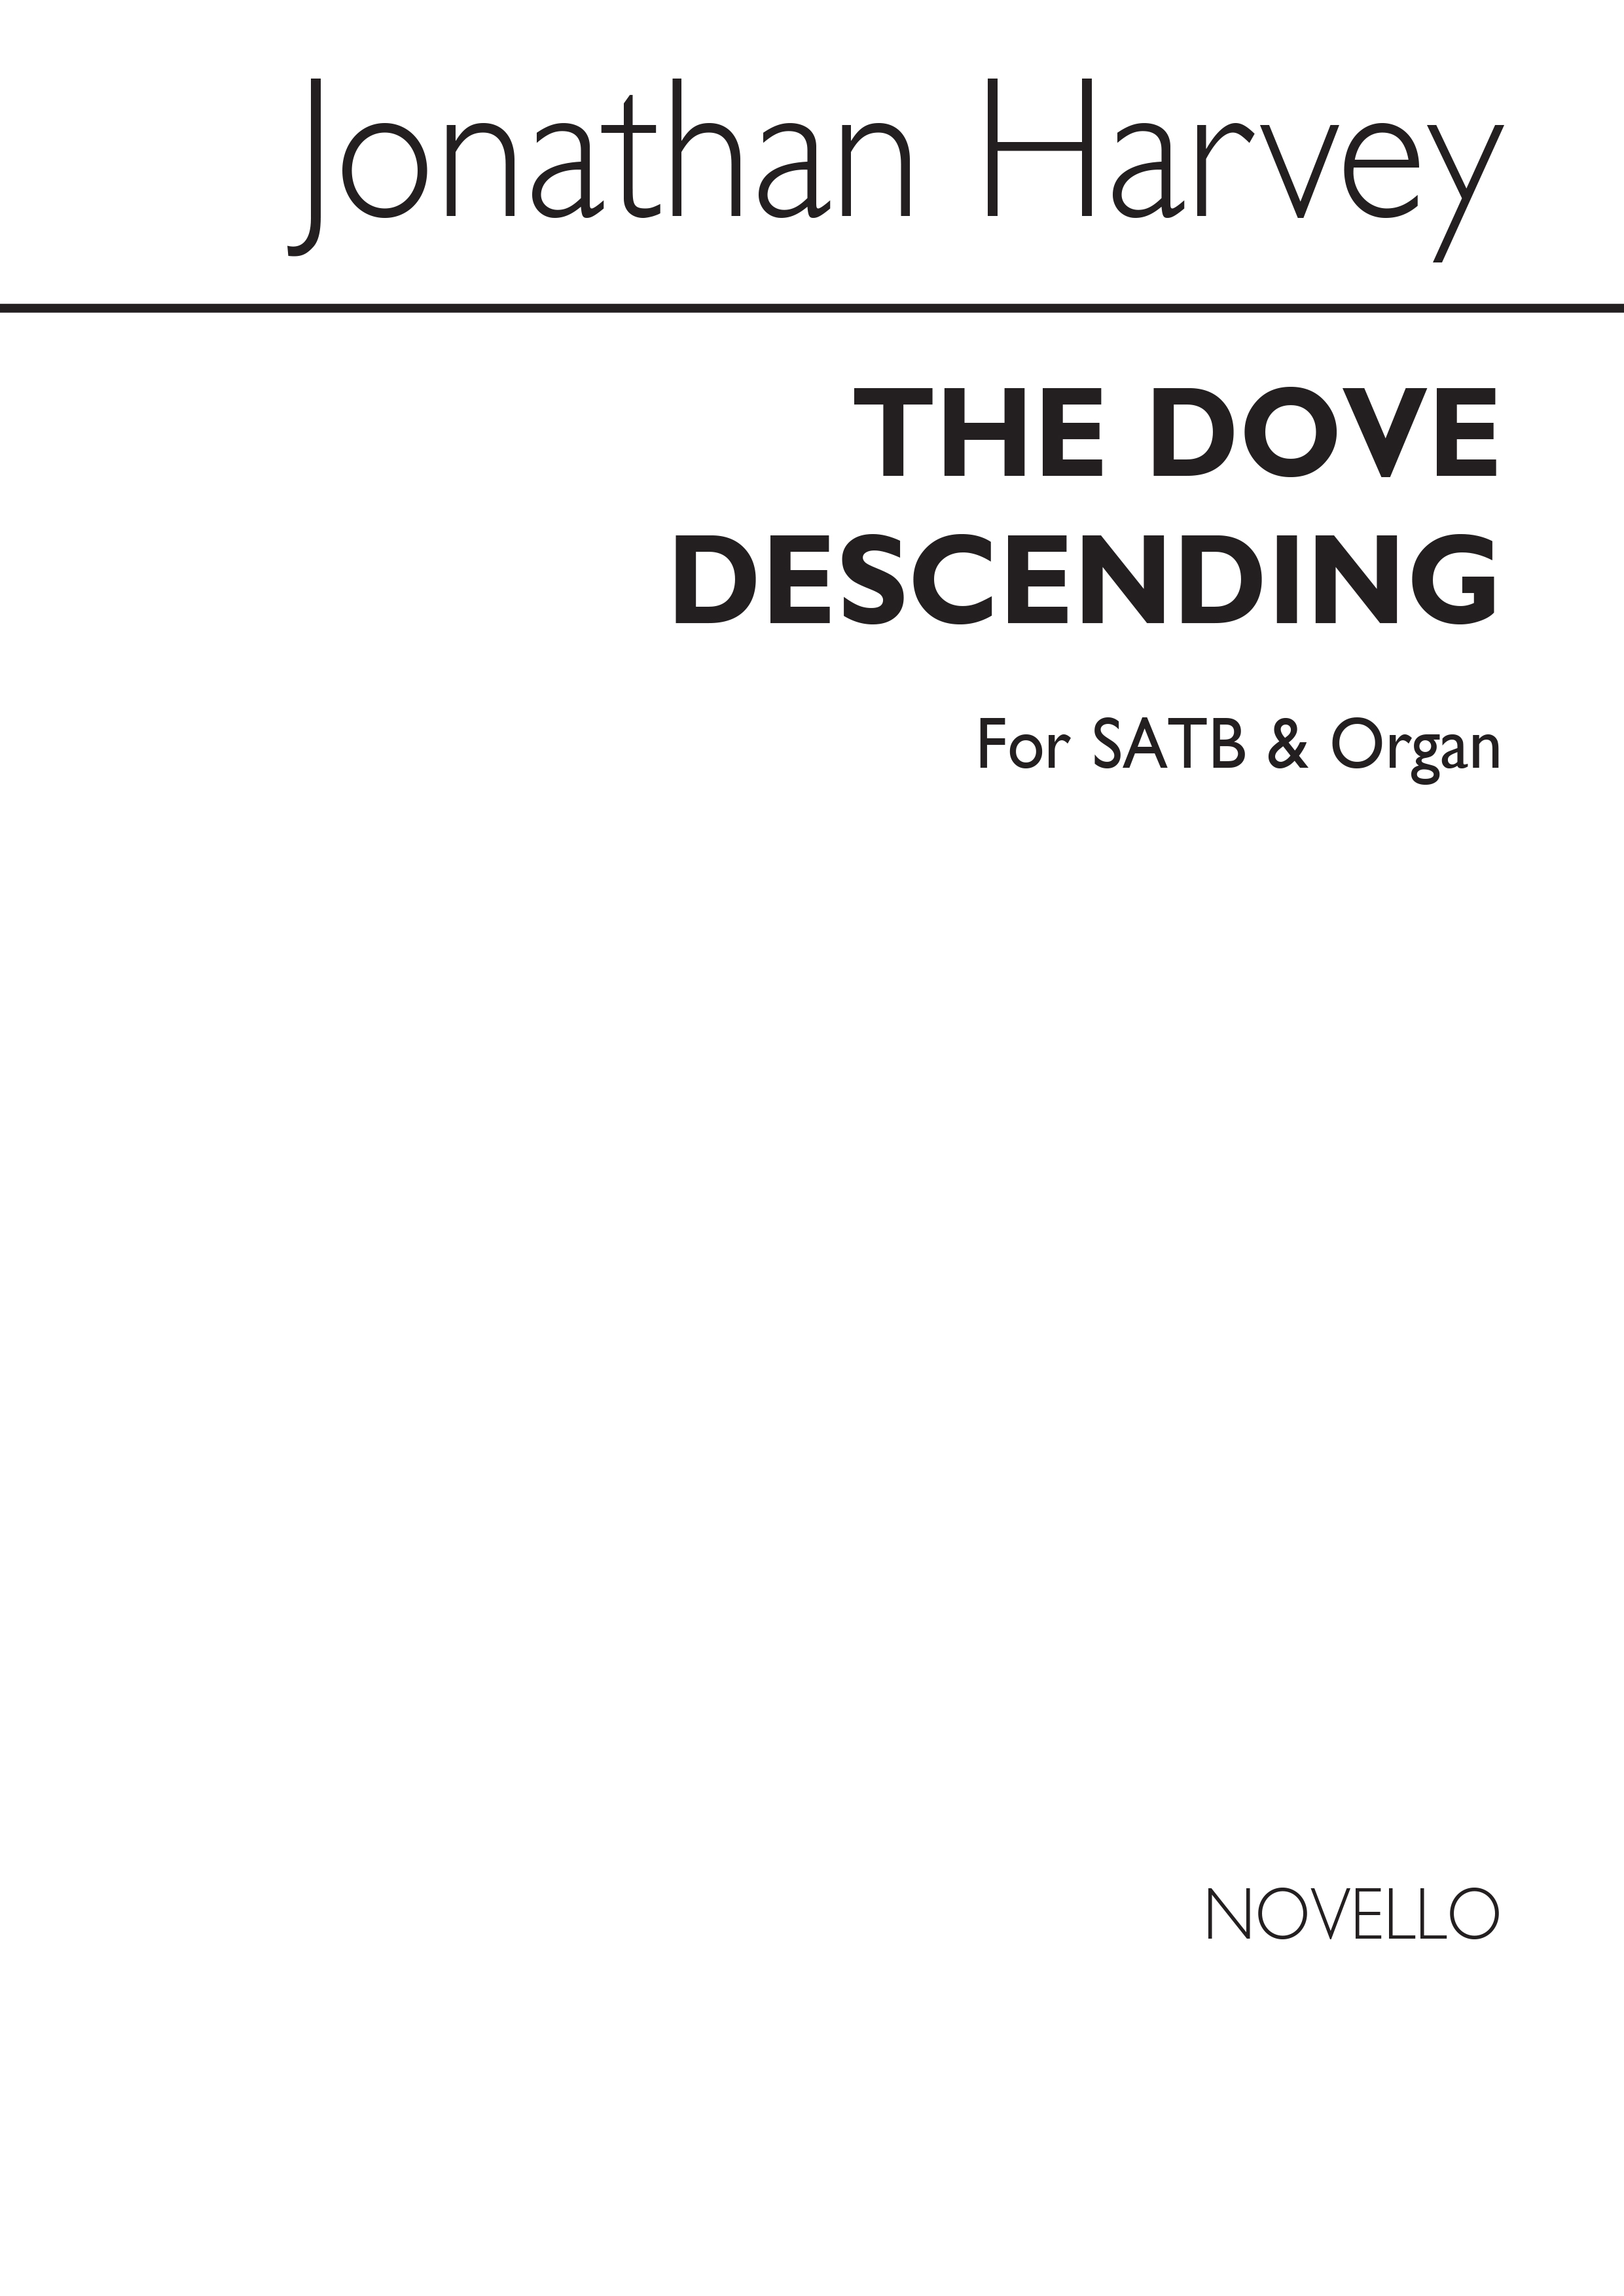 Jonathan Harvey: Dove Descending